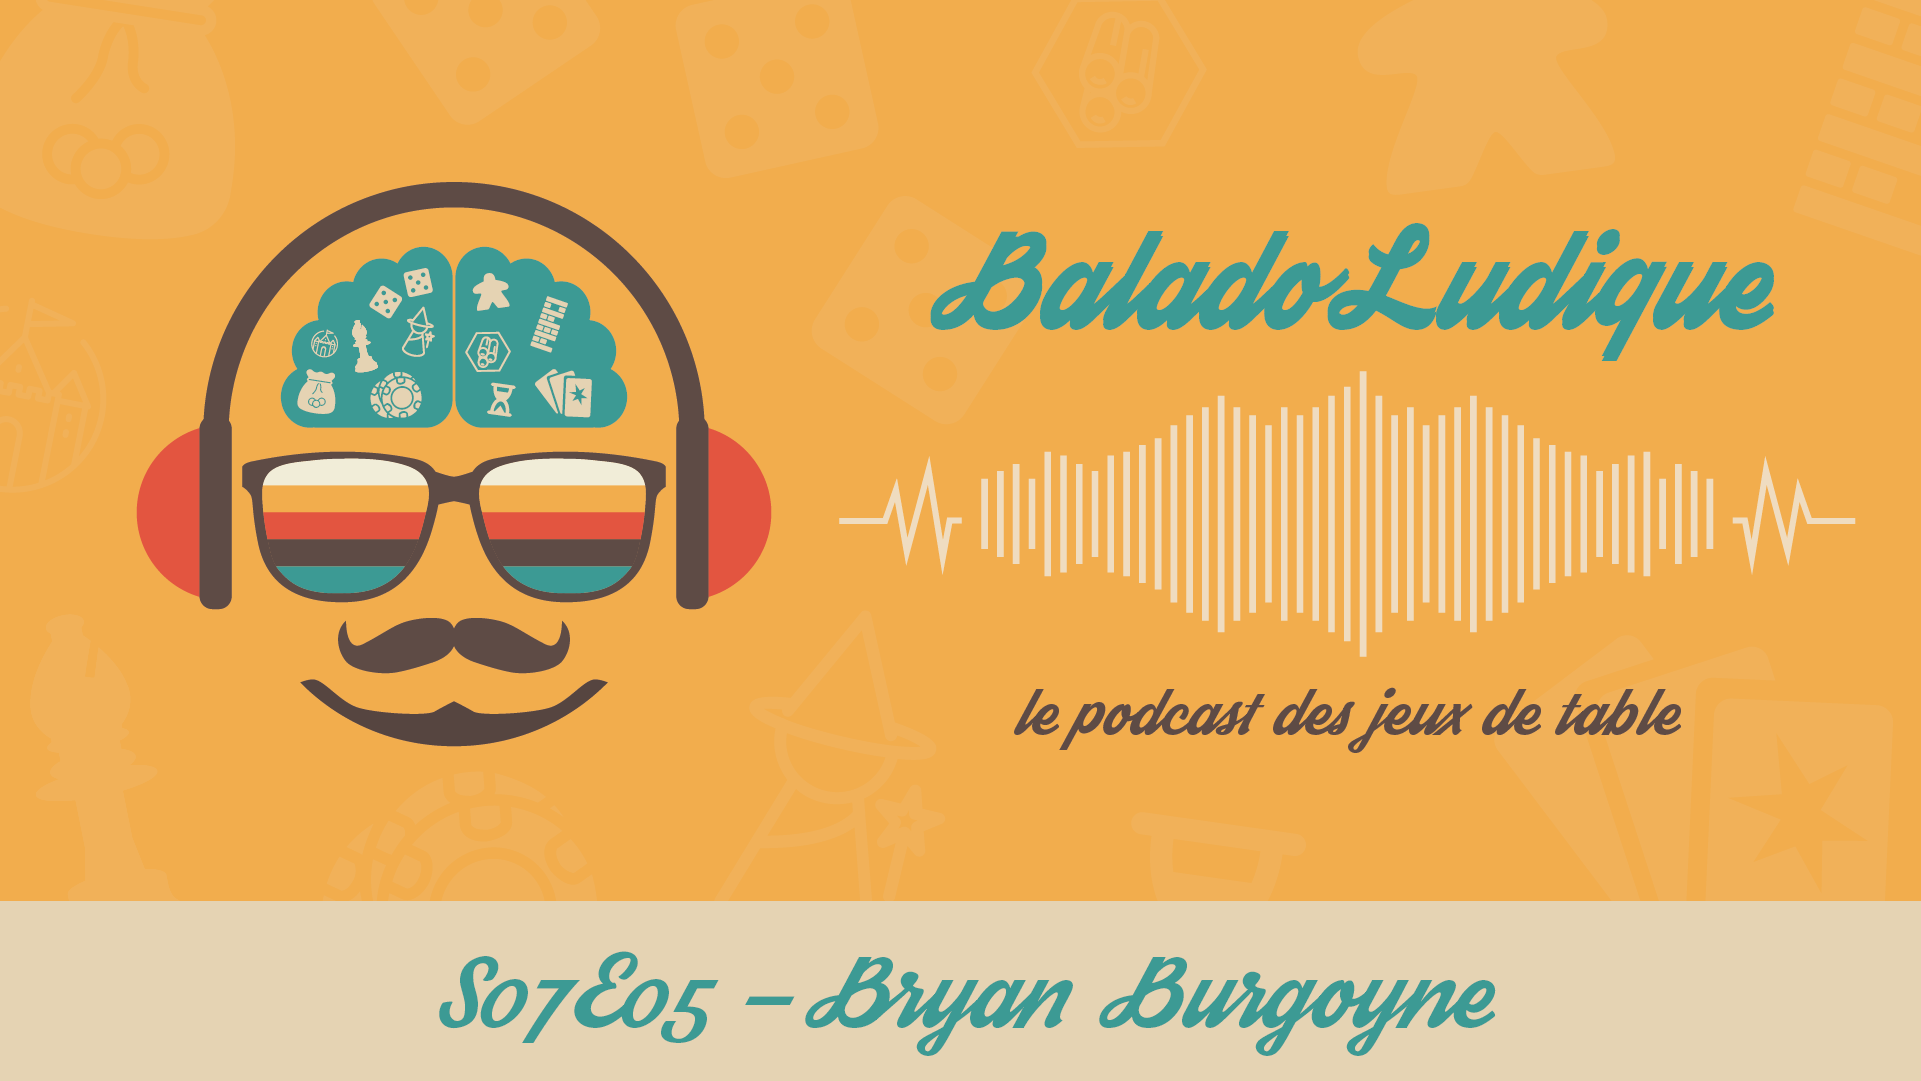 Bryan Burgogne - BaladoLudique - s07-e05